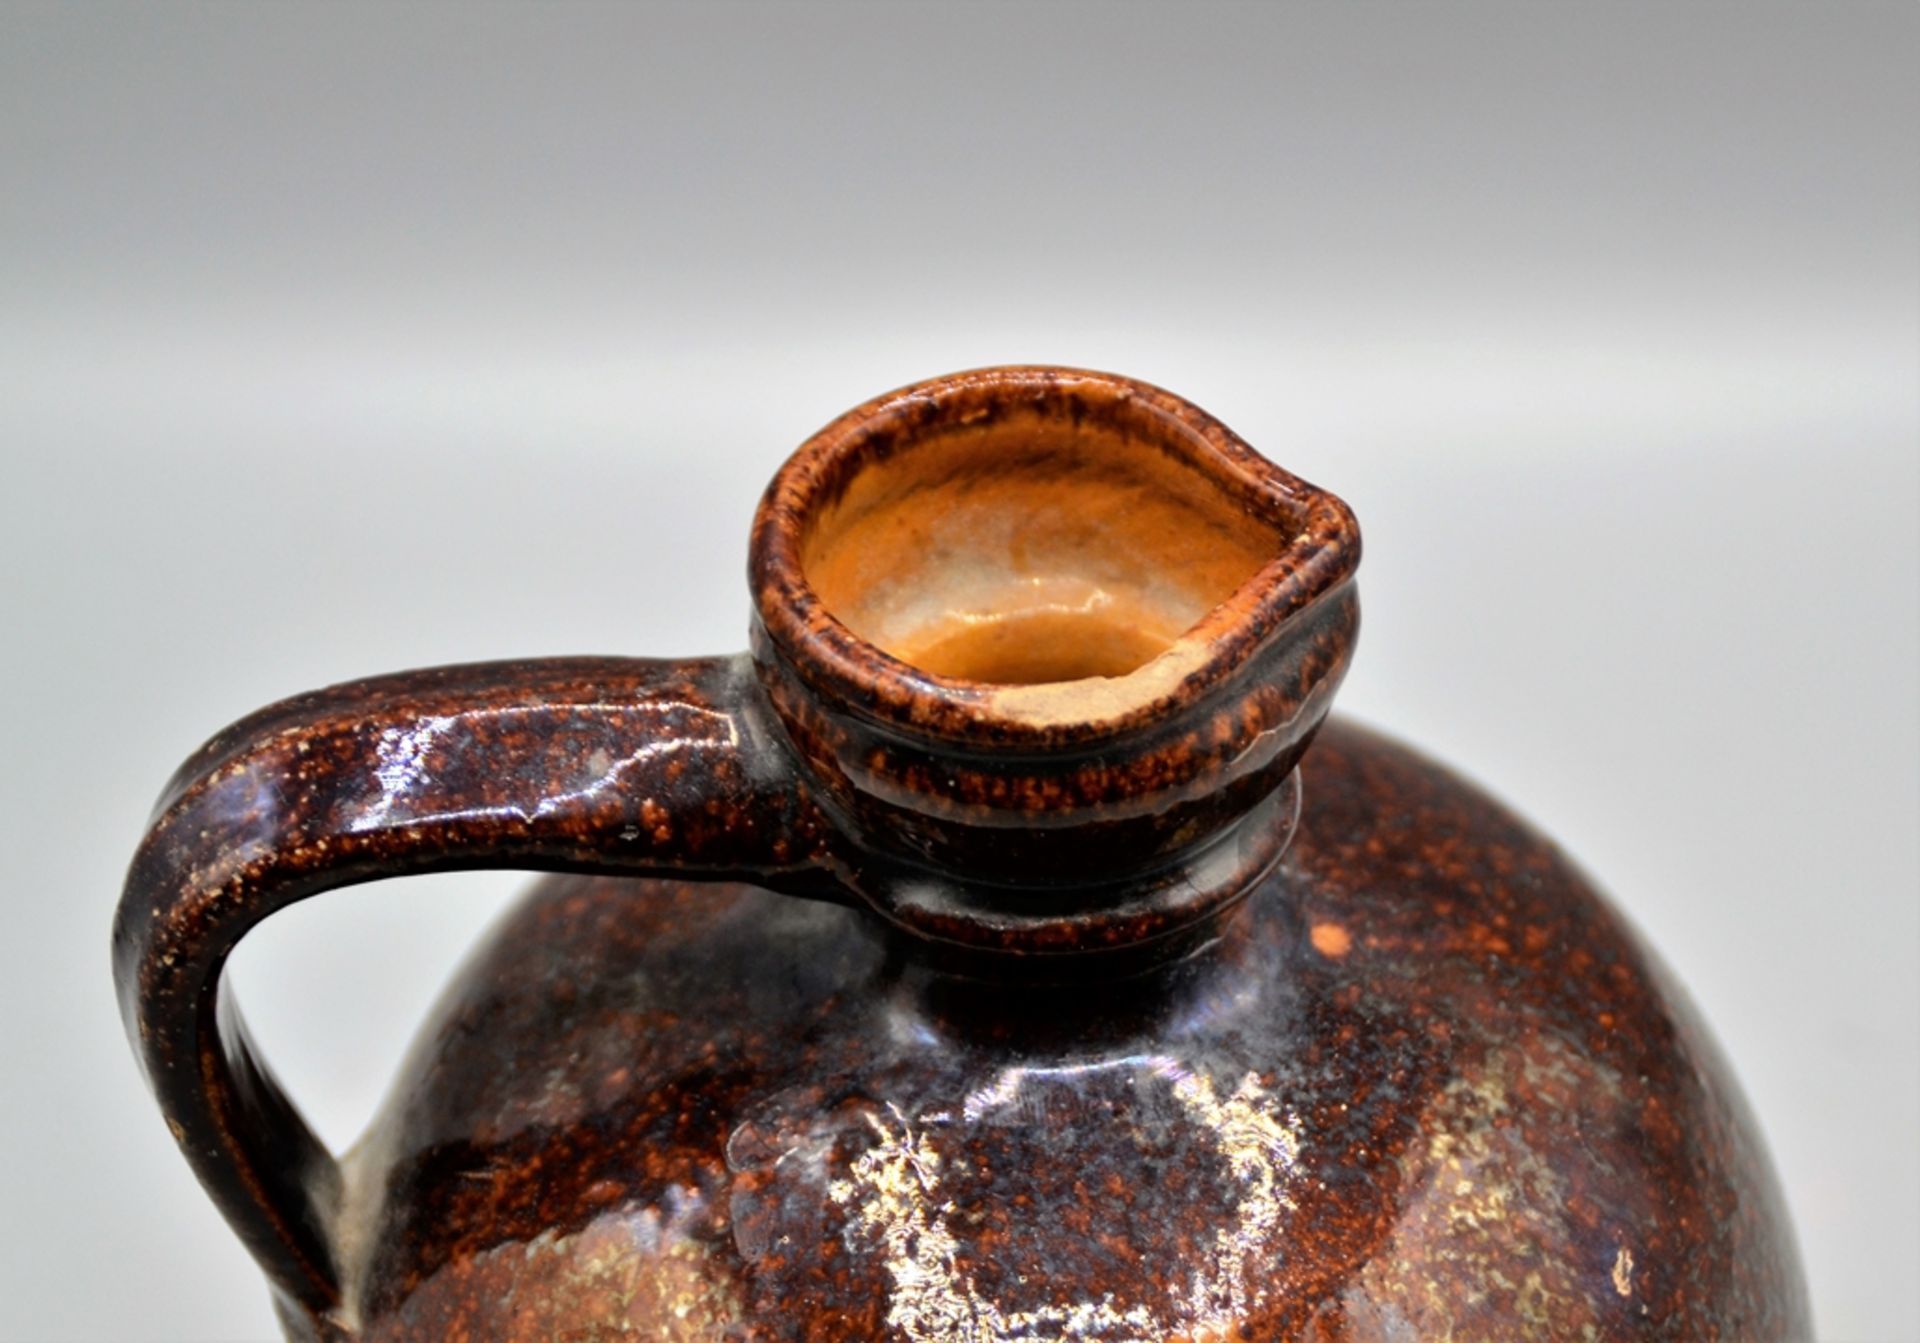 Bludser Hafnerware Keramik, braun glasiert, rötlicher Scherben, leicht bestoßen, ca. 20 cm - Bild 3 aus 4